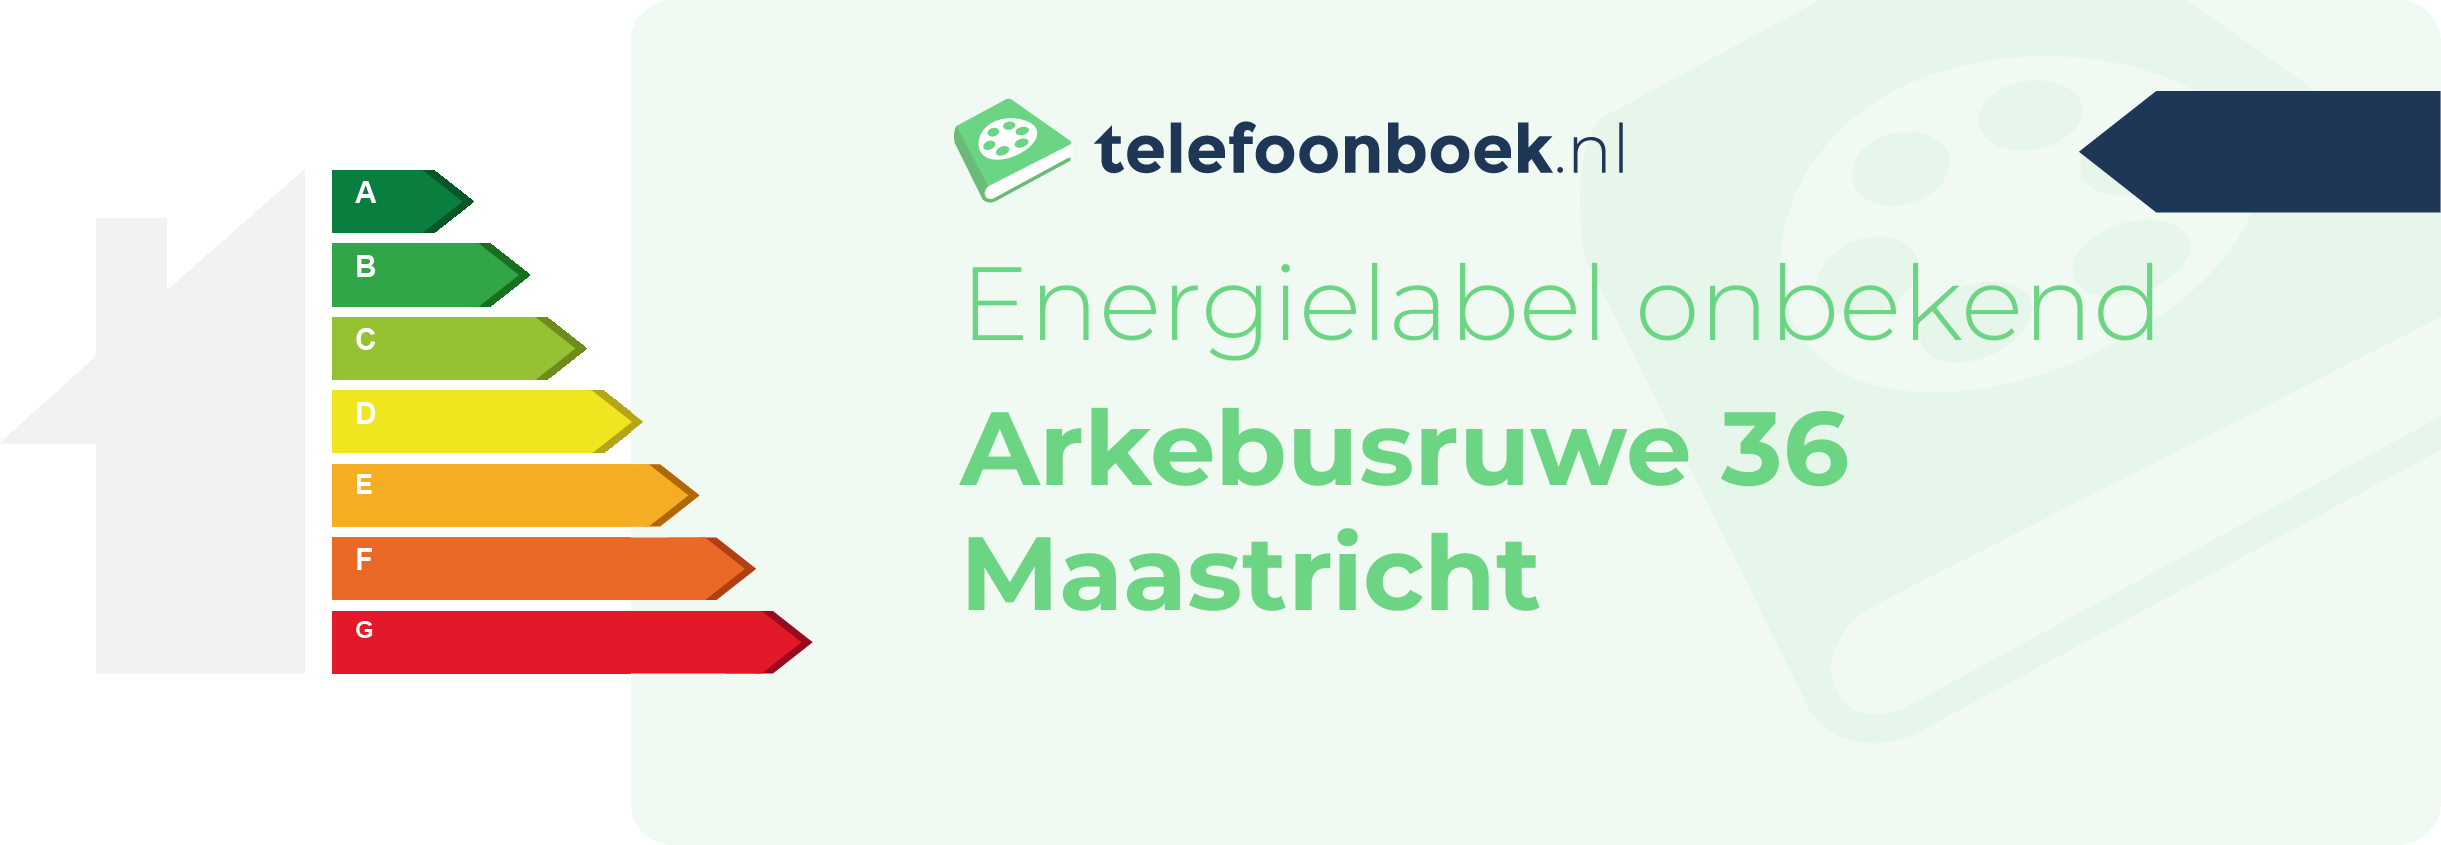 Energielabel Arkebusruwe 36 Maastricht